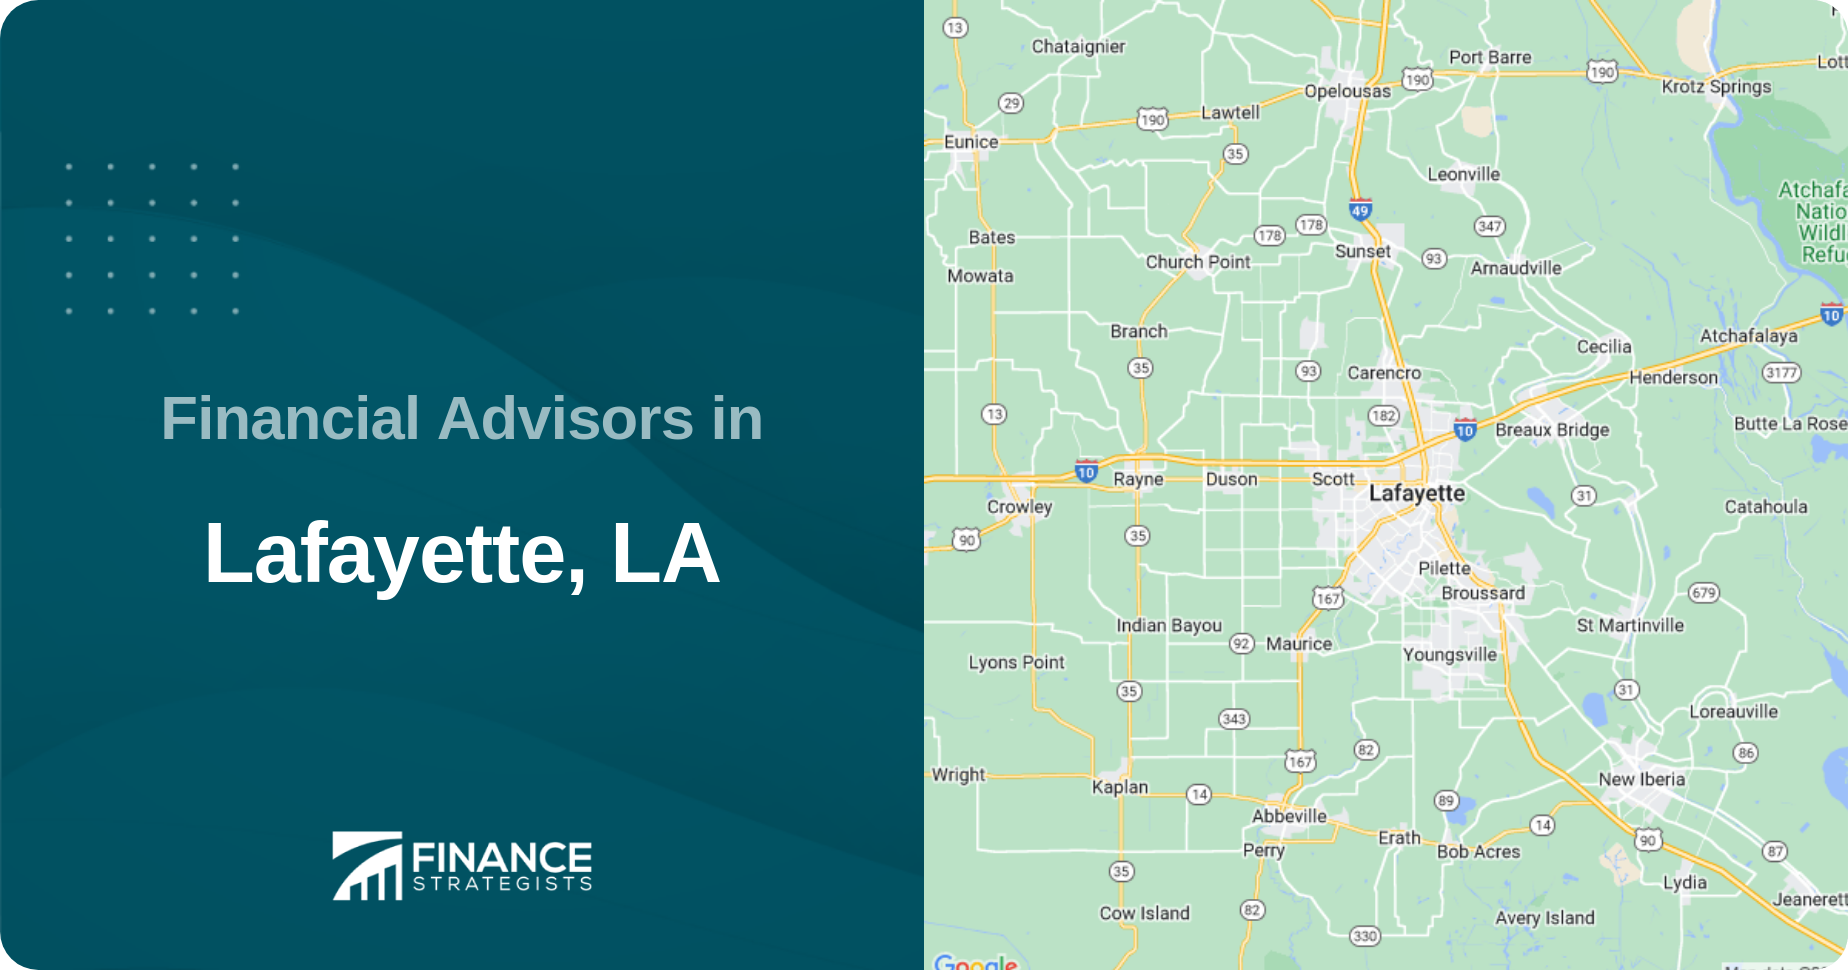 Financial Advisors in Lafayette, LA